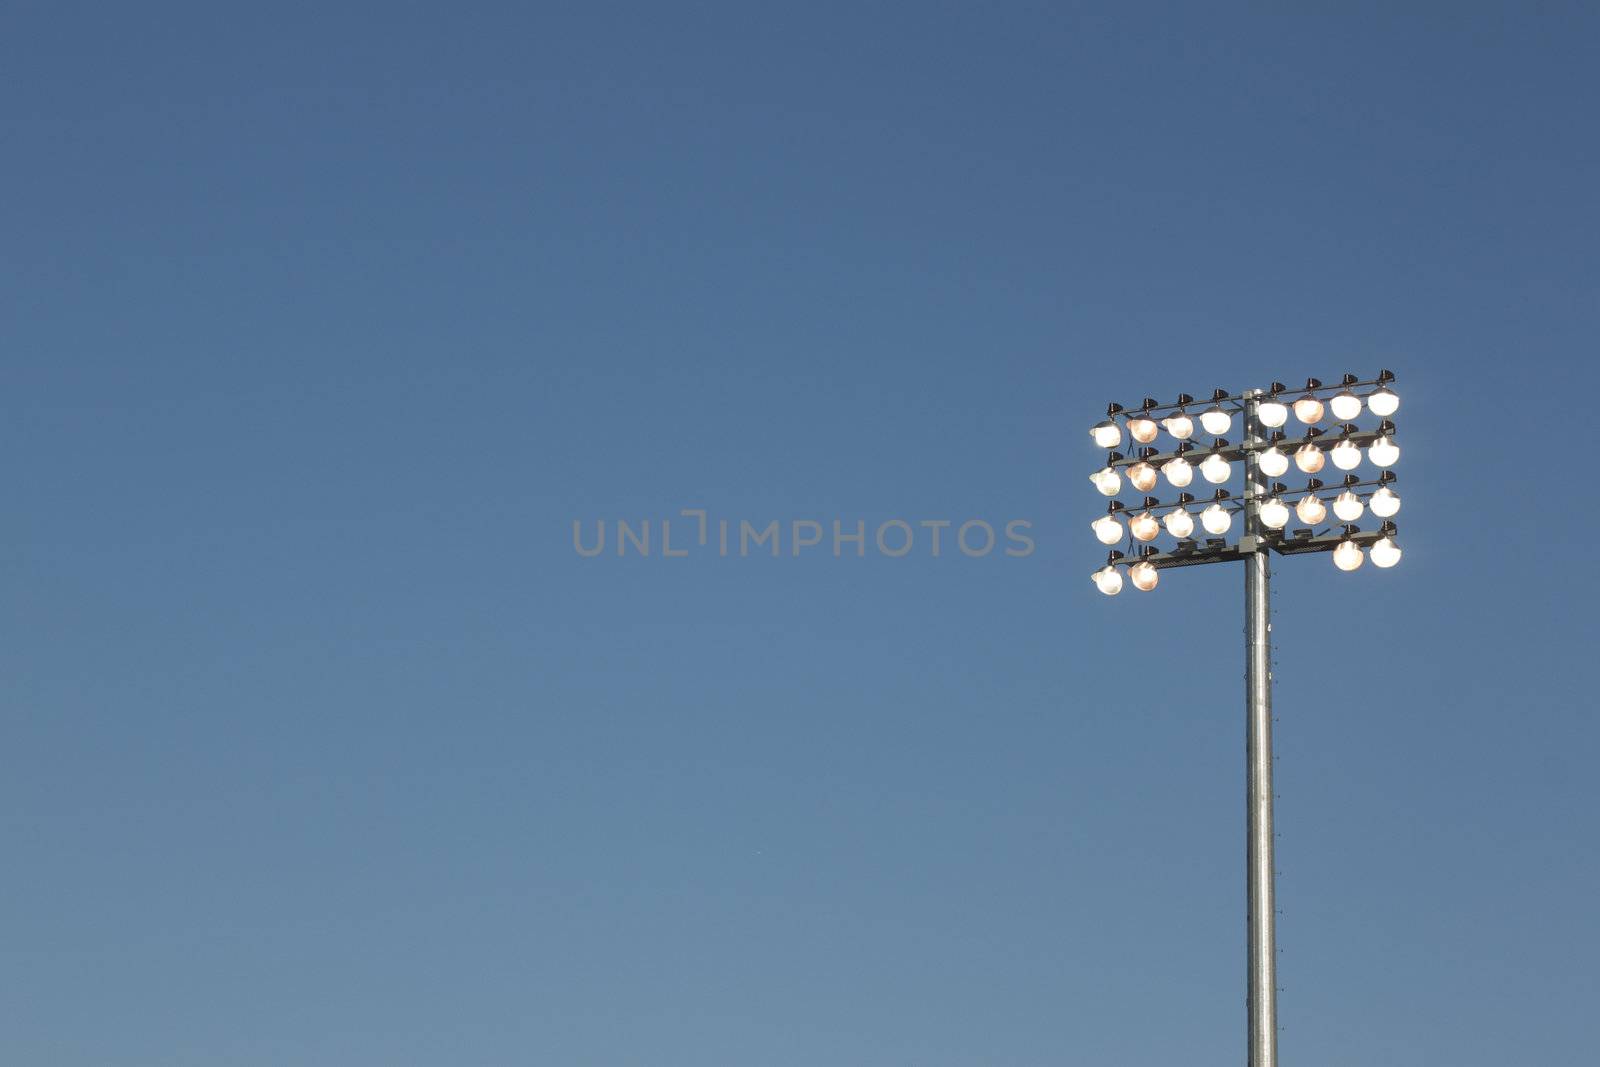 Stadium lights on a blue sky background by jeremywhat